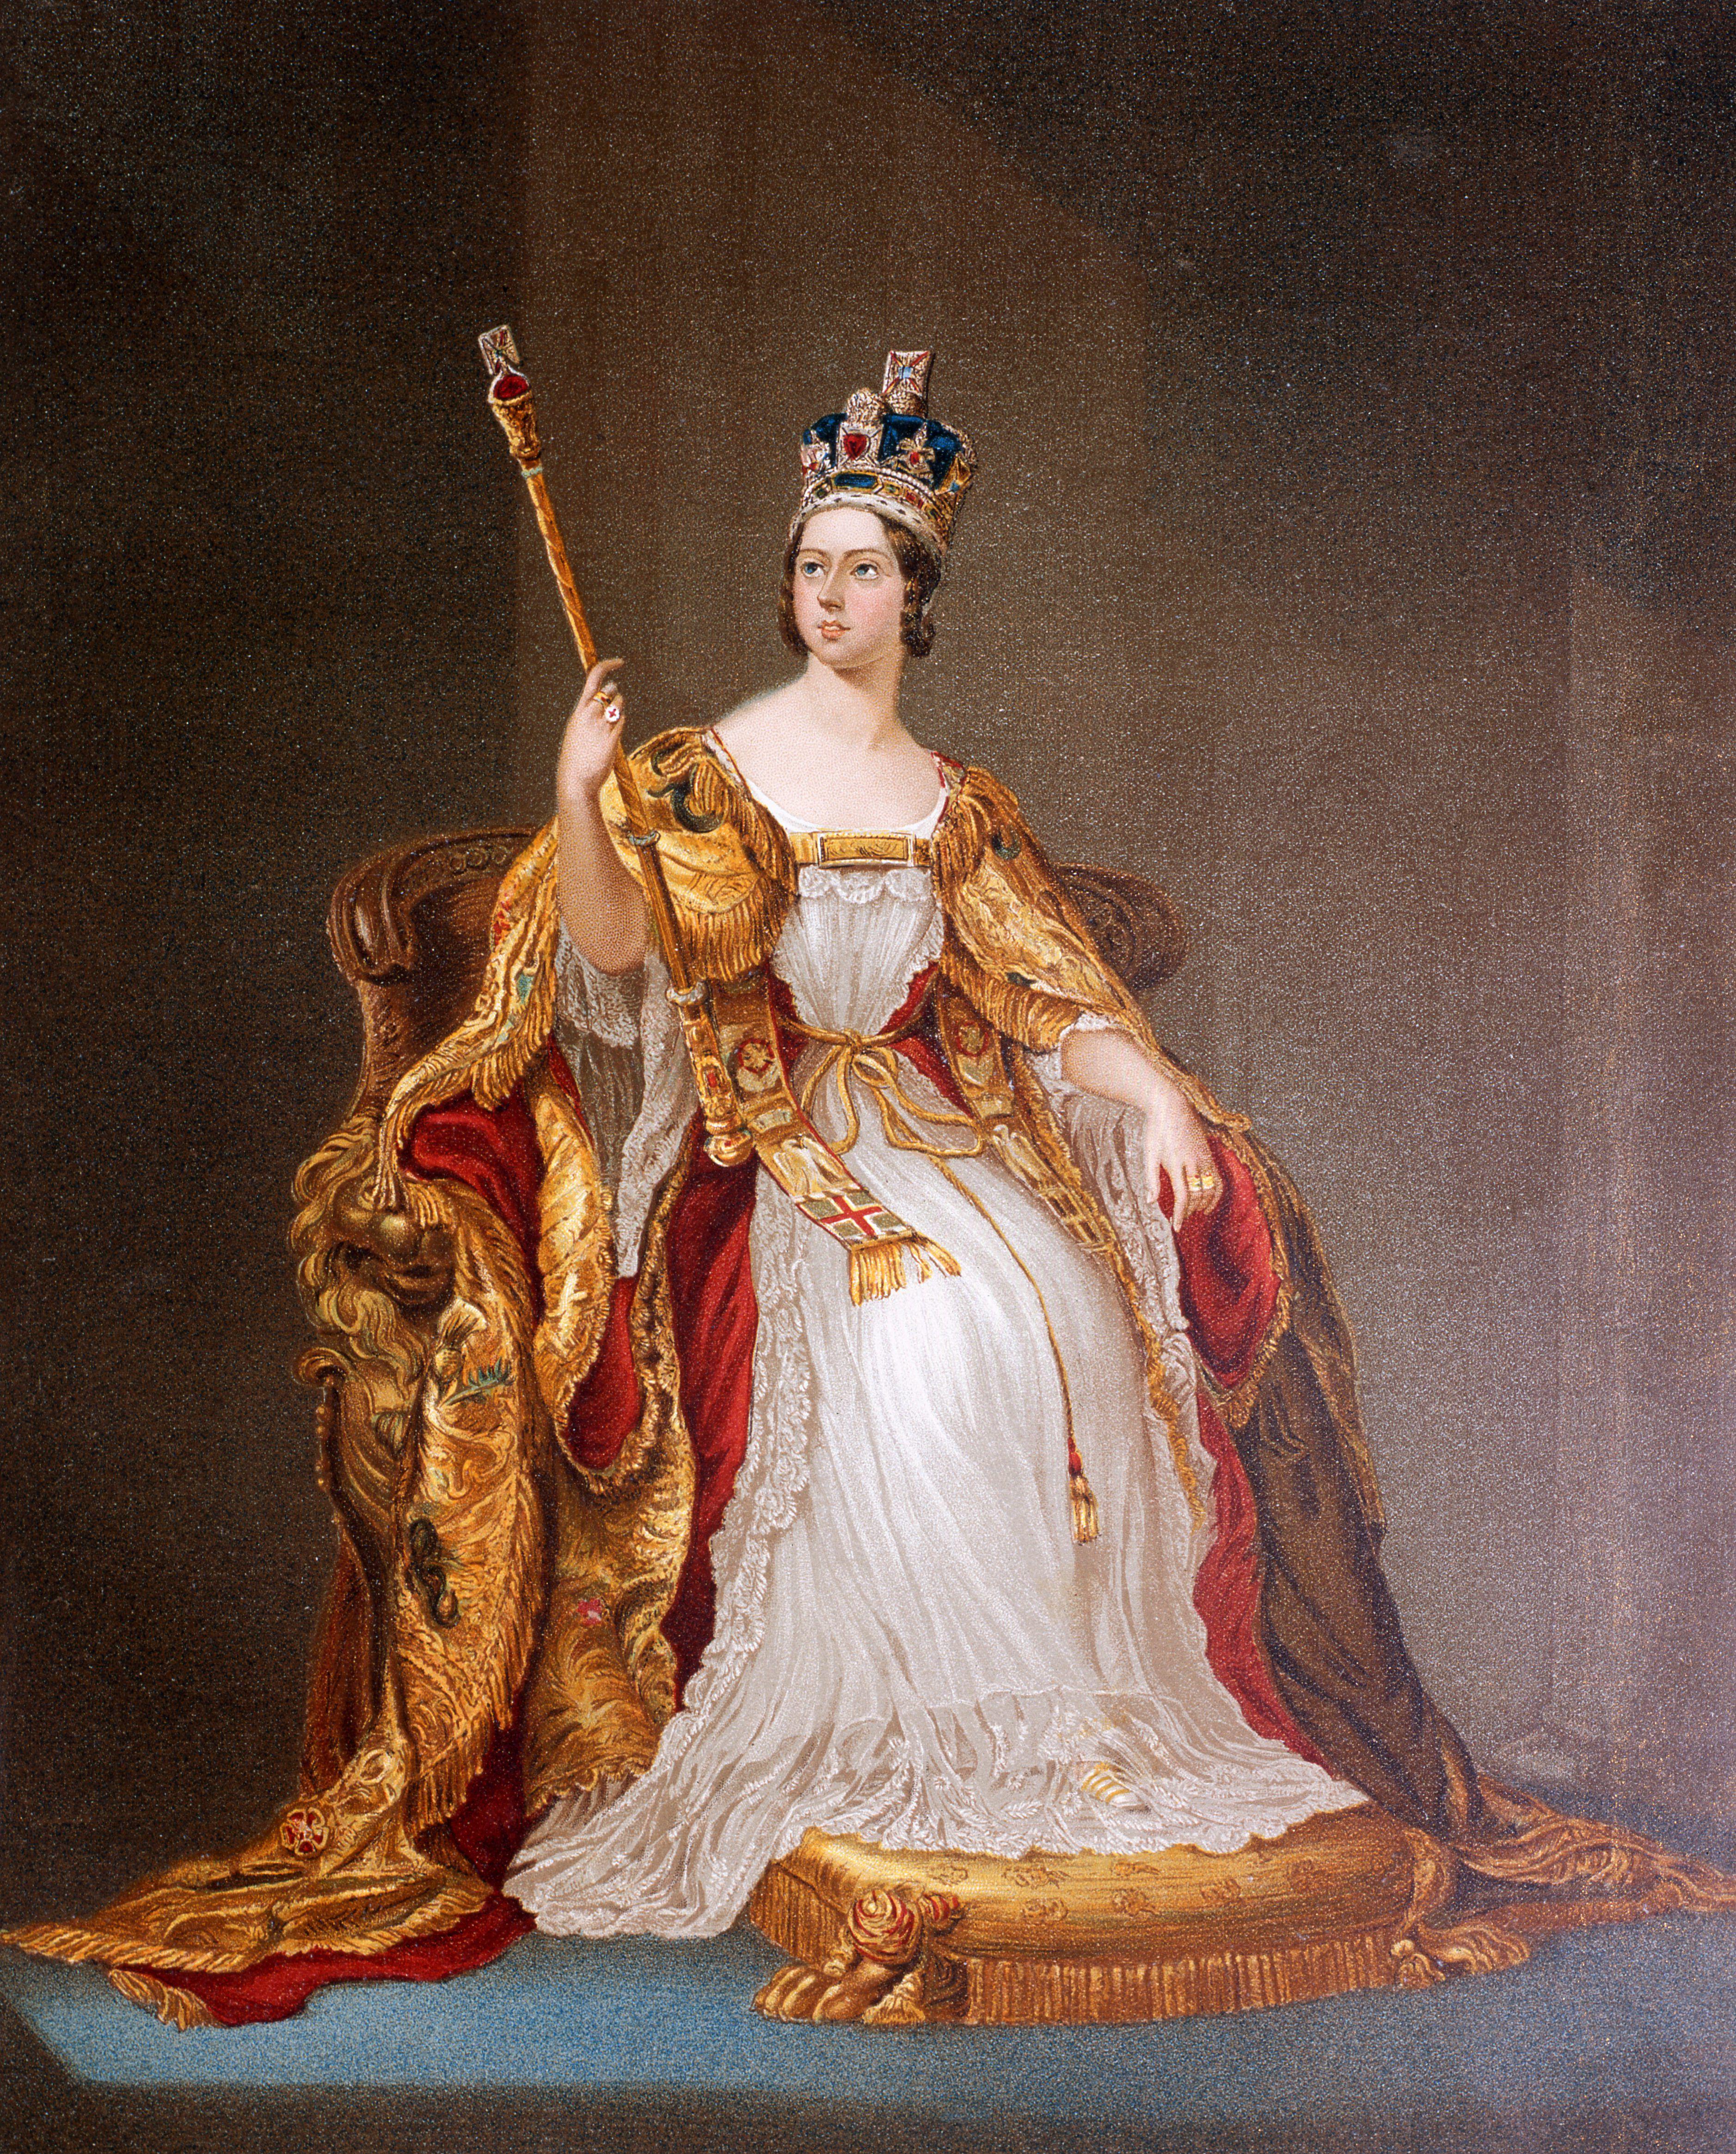 Queen Victoria in her coronation dress 